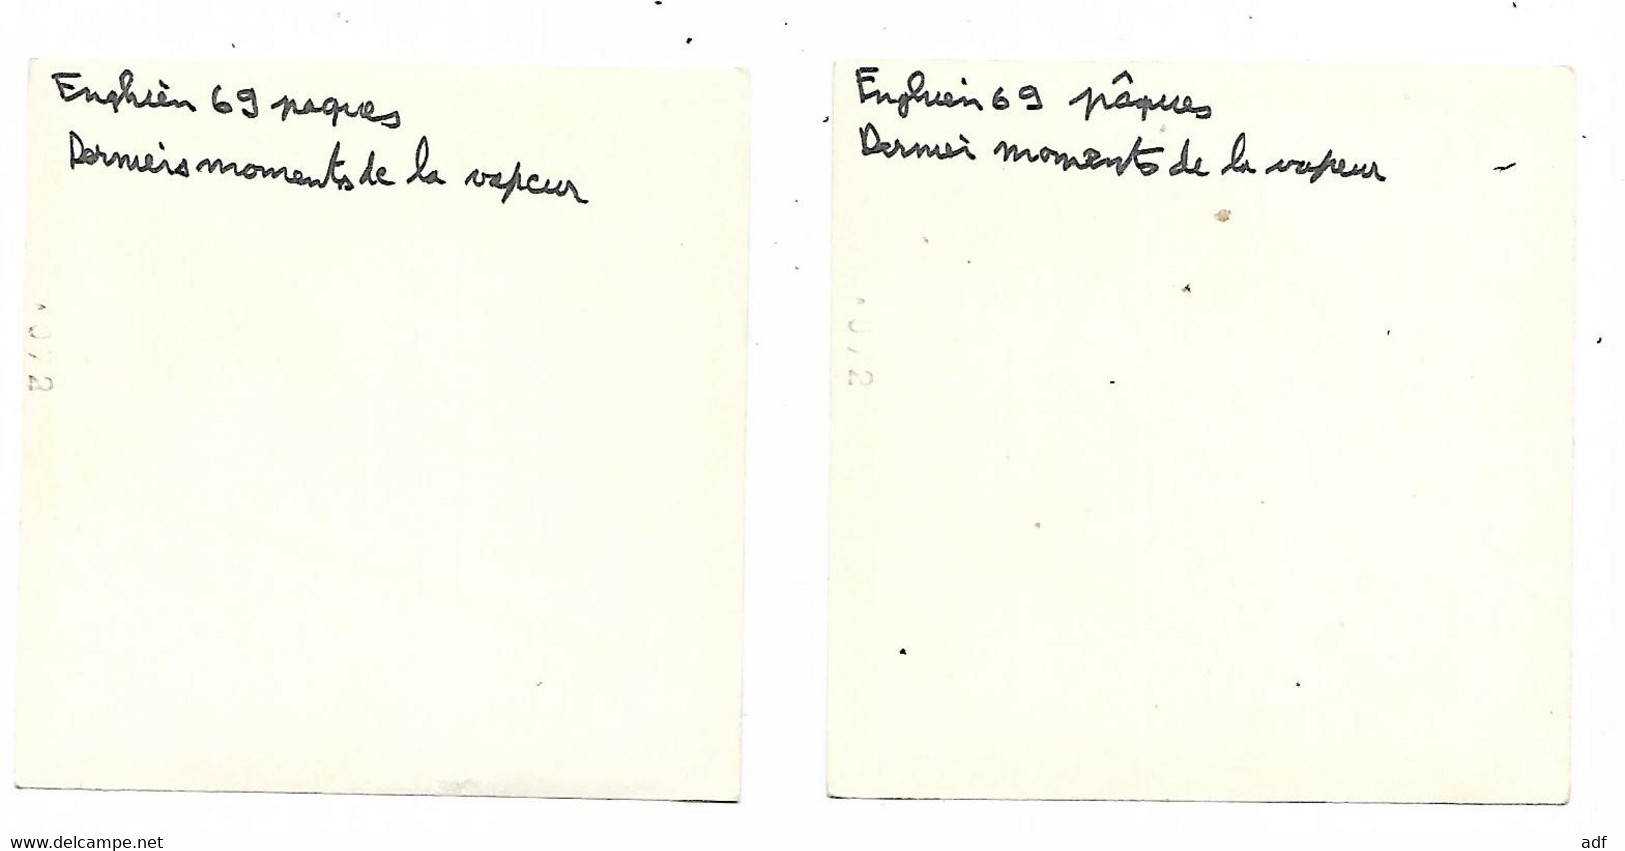 LOT 2 ANCIENNES PHOTO ENGHIEN ( EDINGEN ), TRAIN, LOCOMOTIVE, 1969, " DERNIERS MOMENTS DE LA VAPEUR ", HAINAUT, BELGIQUE - Enghien - Edingen